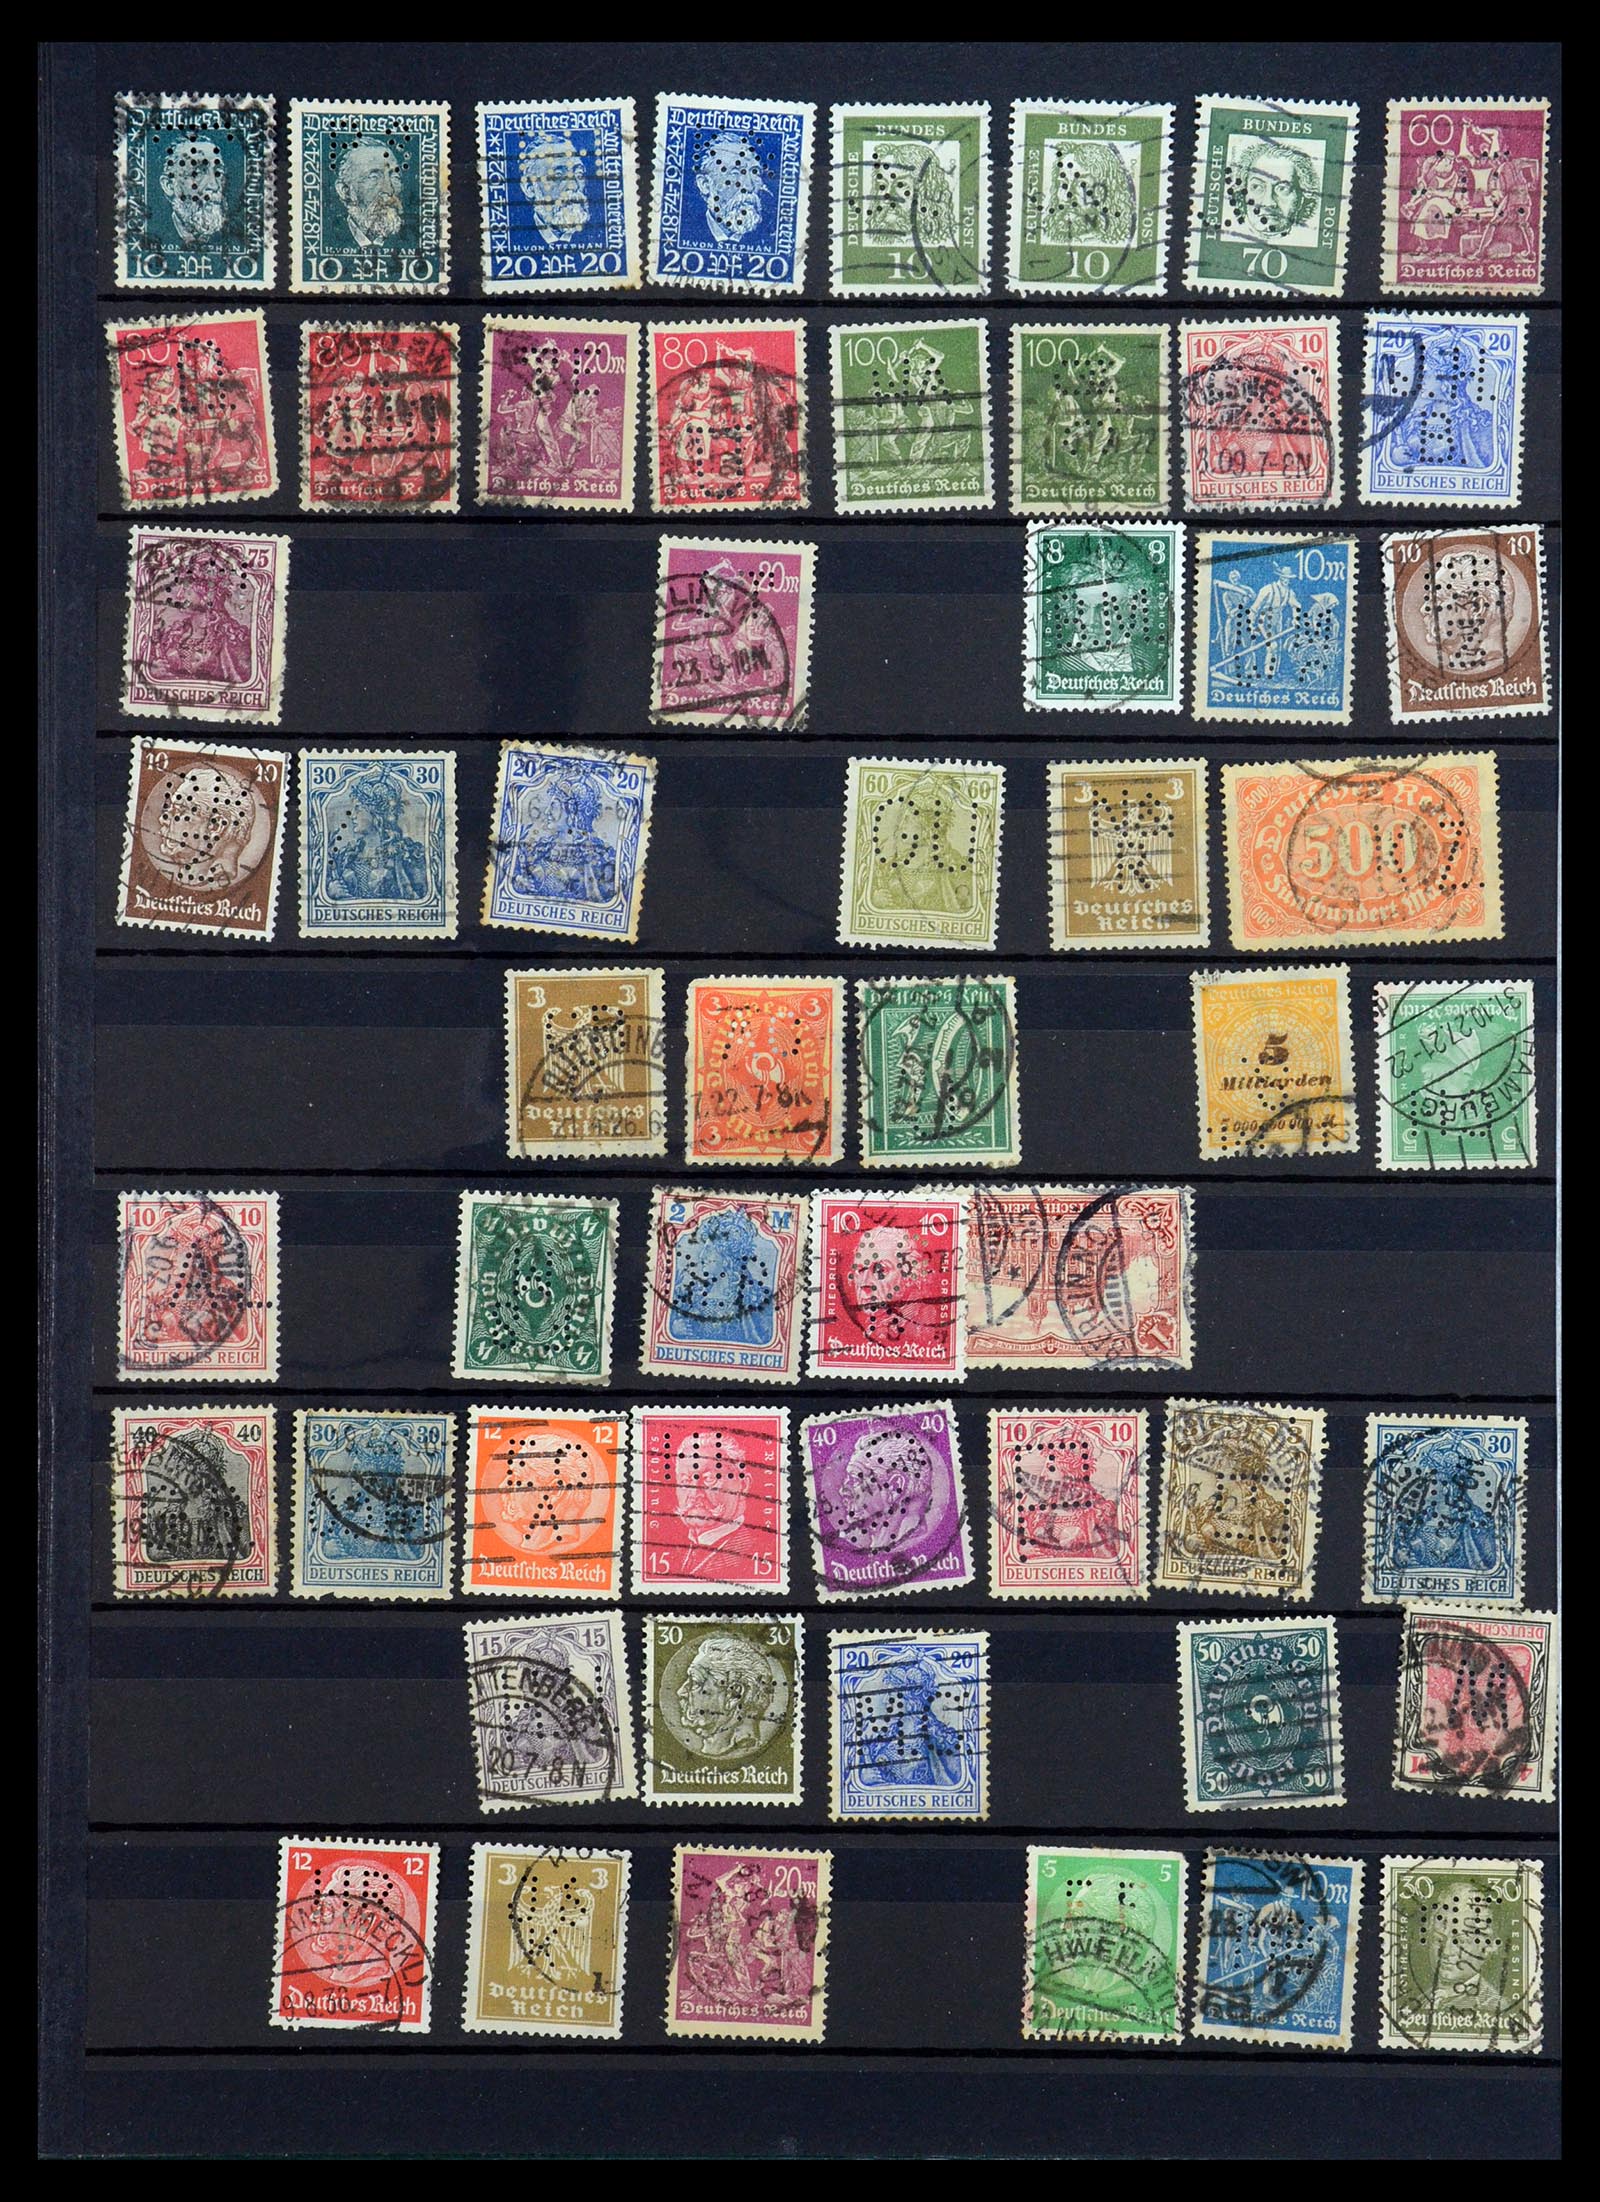 35183 028 - Stamp Collection 35183 German Reich perfins 1880-1945.